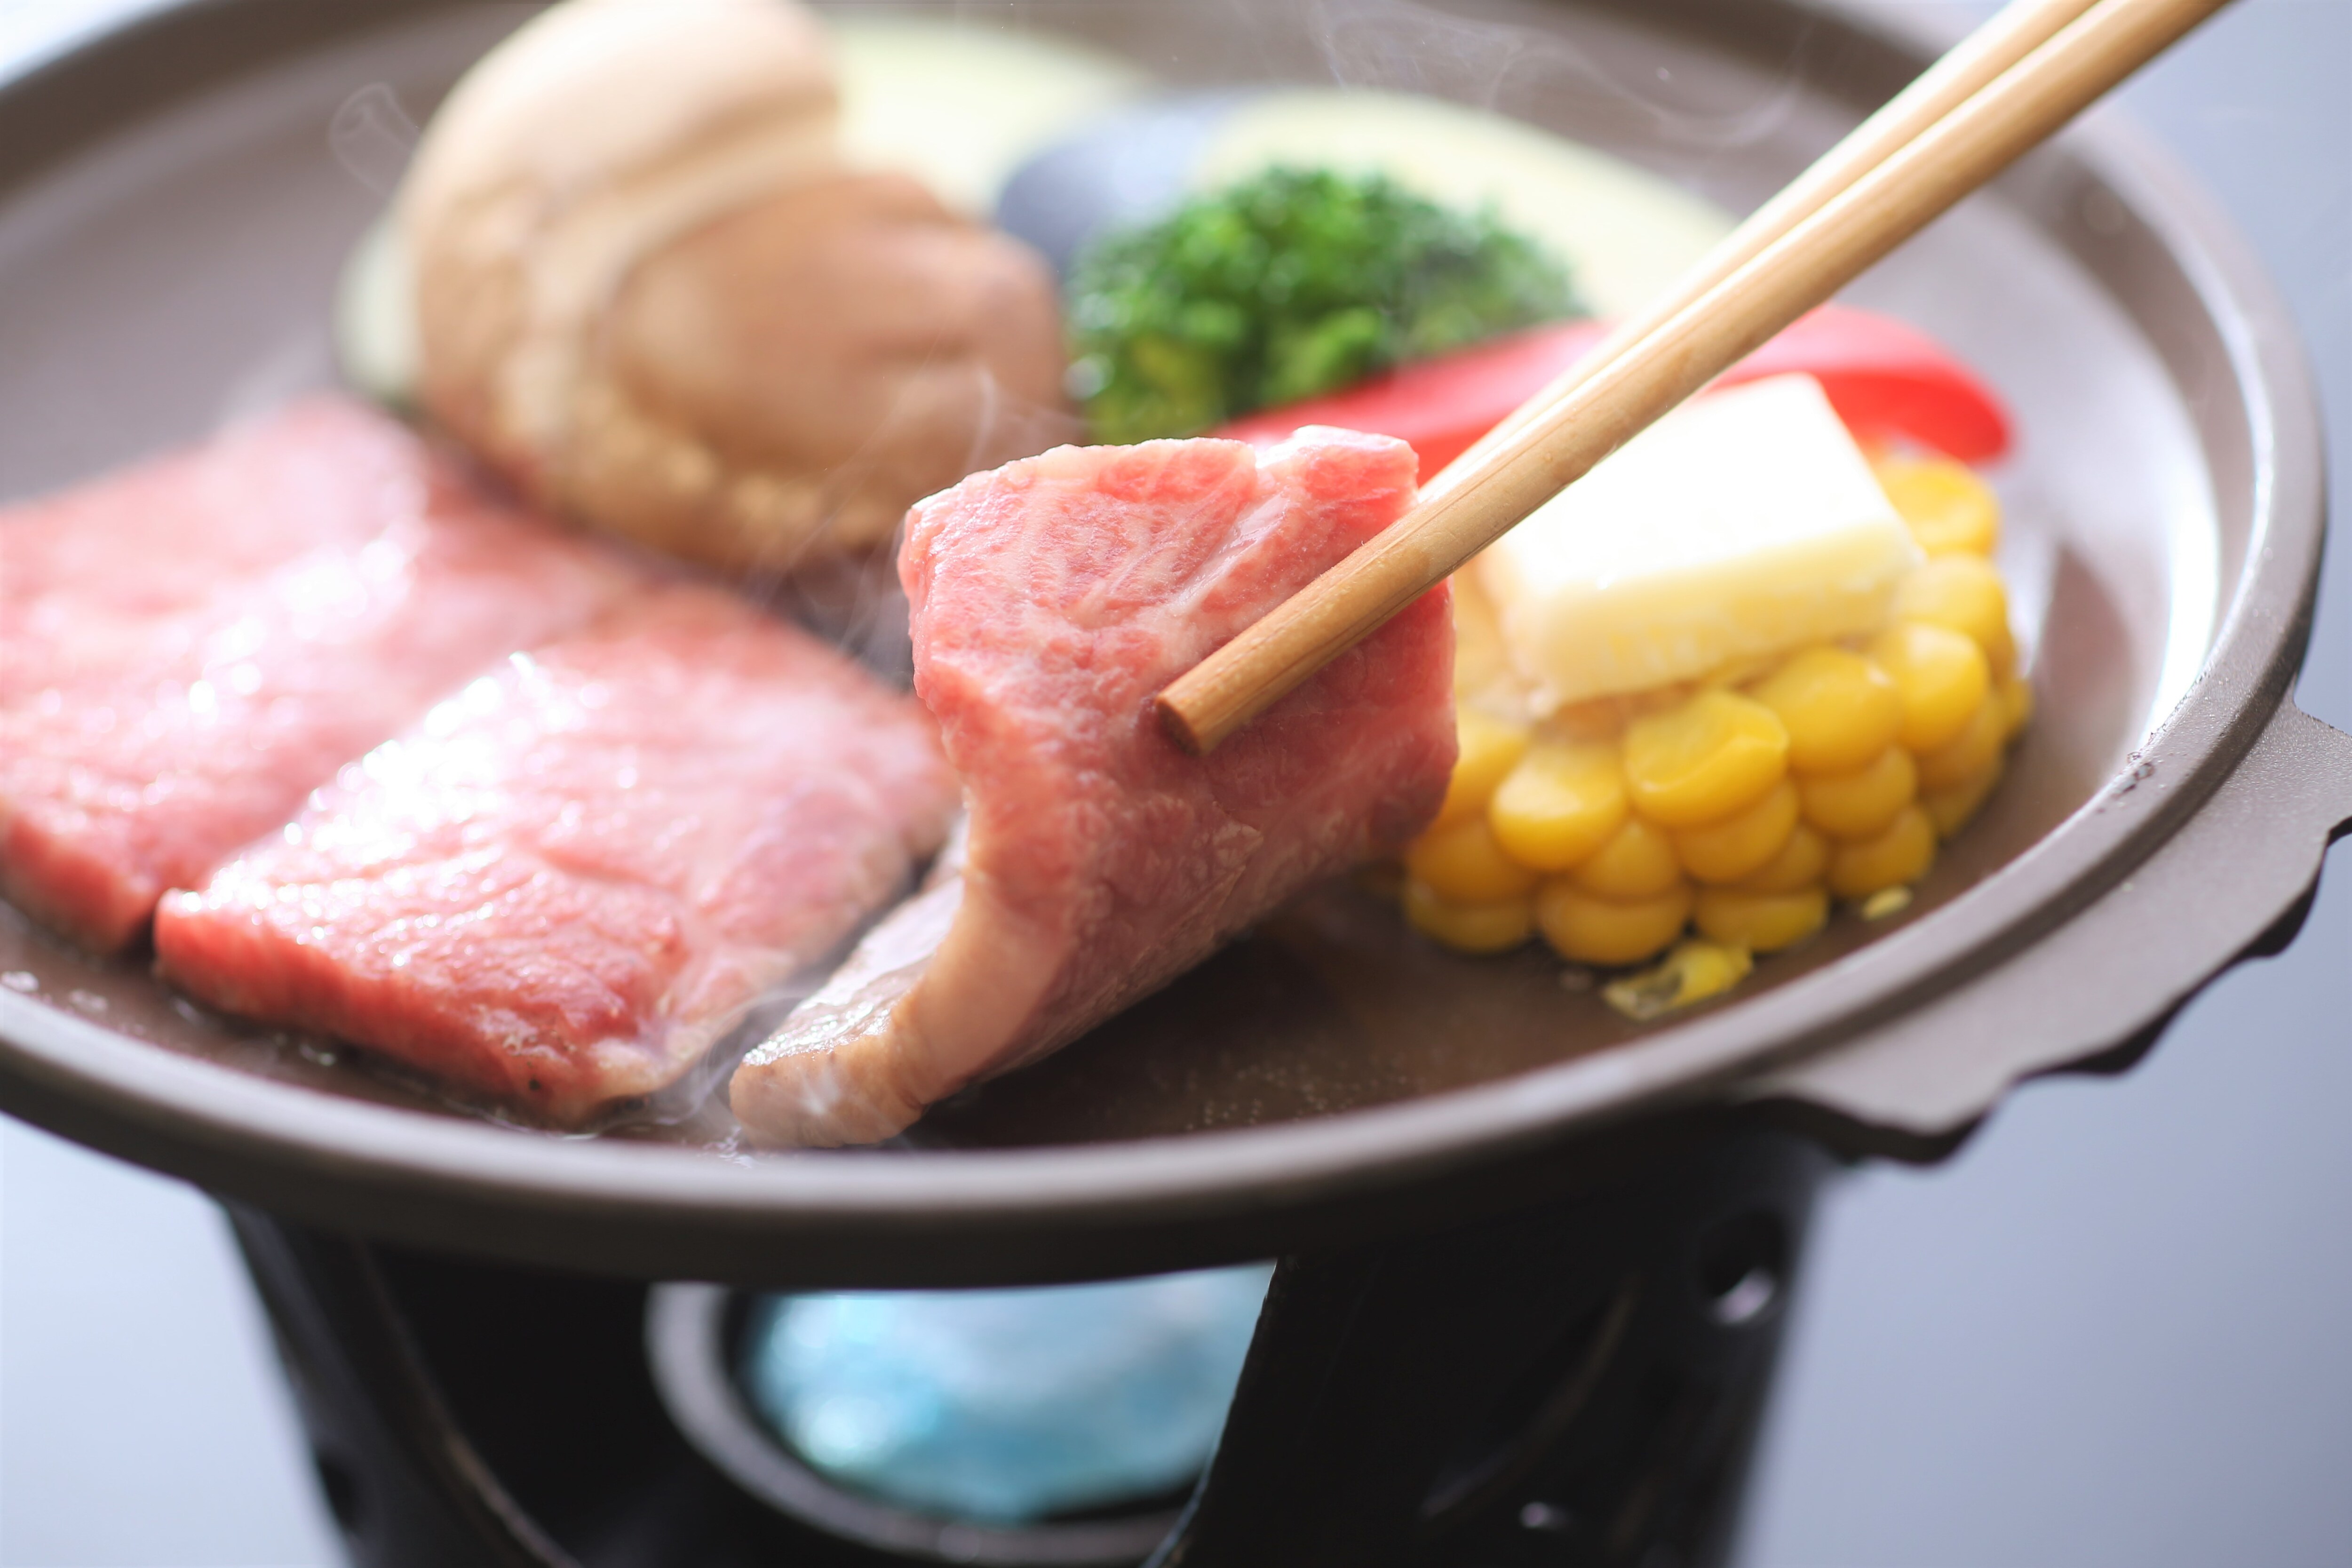 เนื้อญี่ปุ่นชิมาเนะย่างบนจานเซรามิก